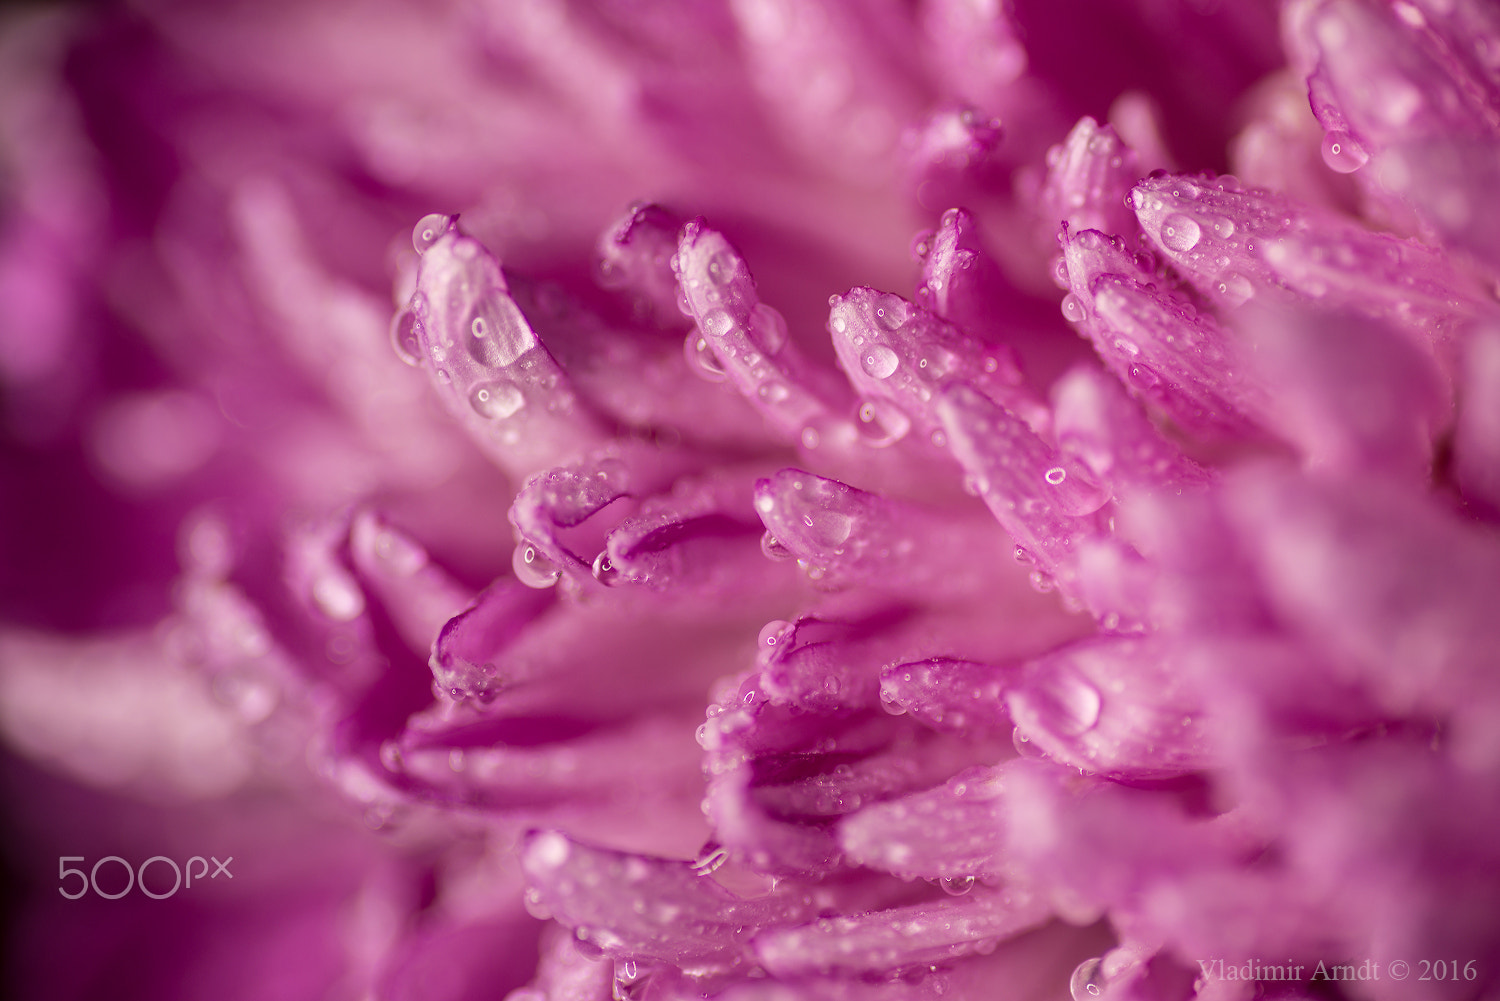 Nikon D800 + Tokina AT-X Pro 100mm F2.8 Macro sample photo. Water drop on pink petals. photography